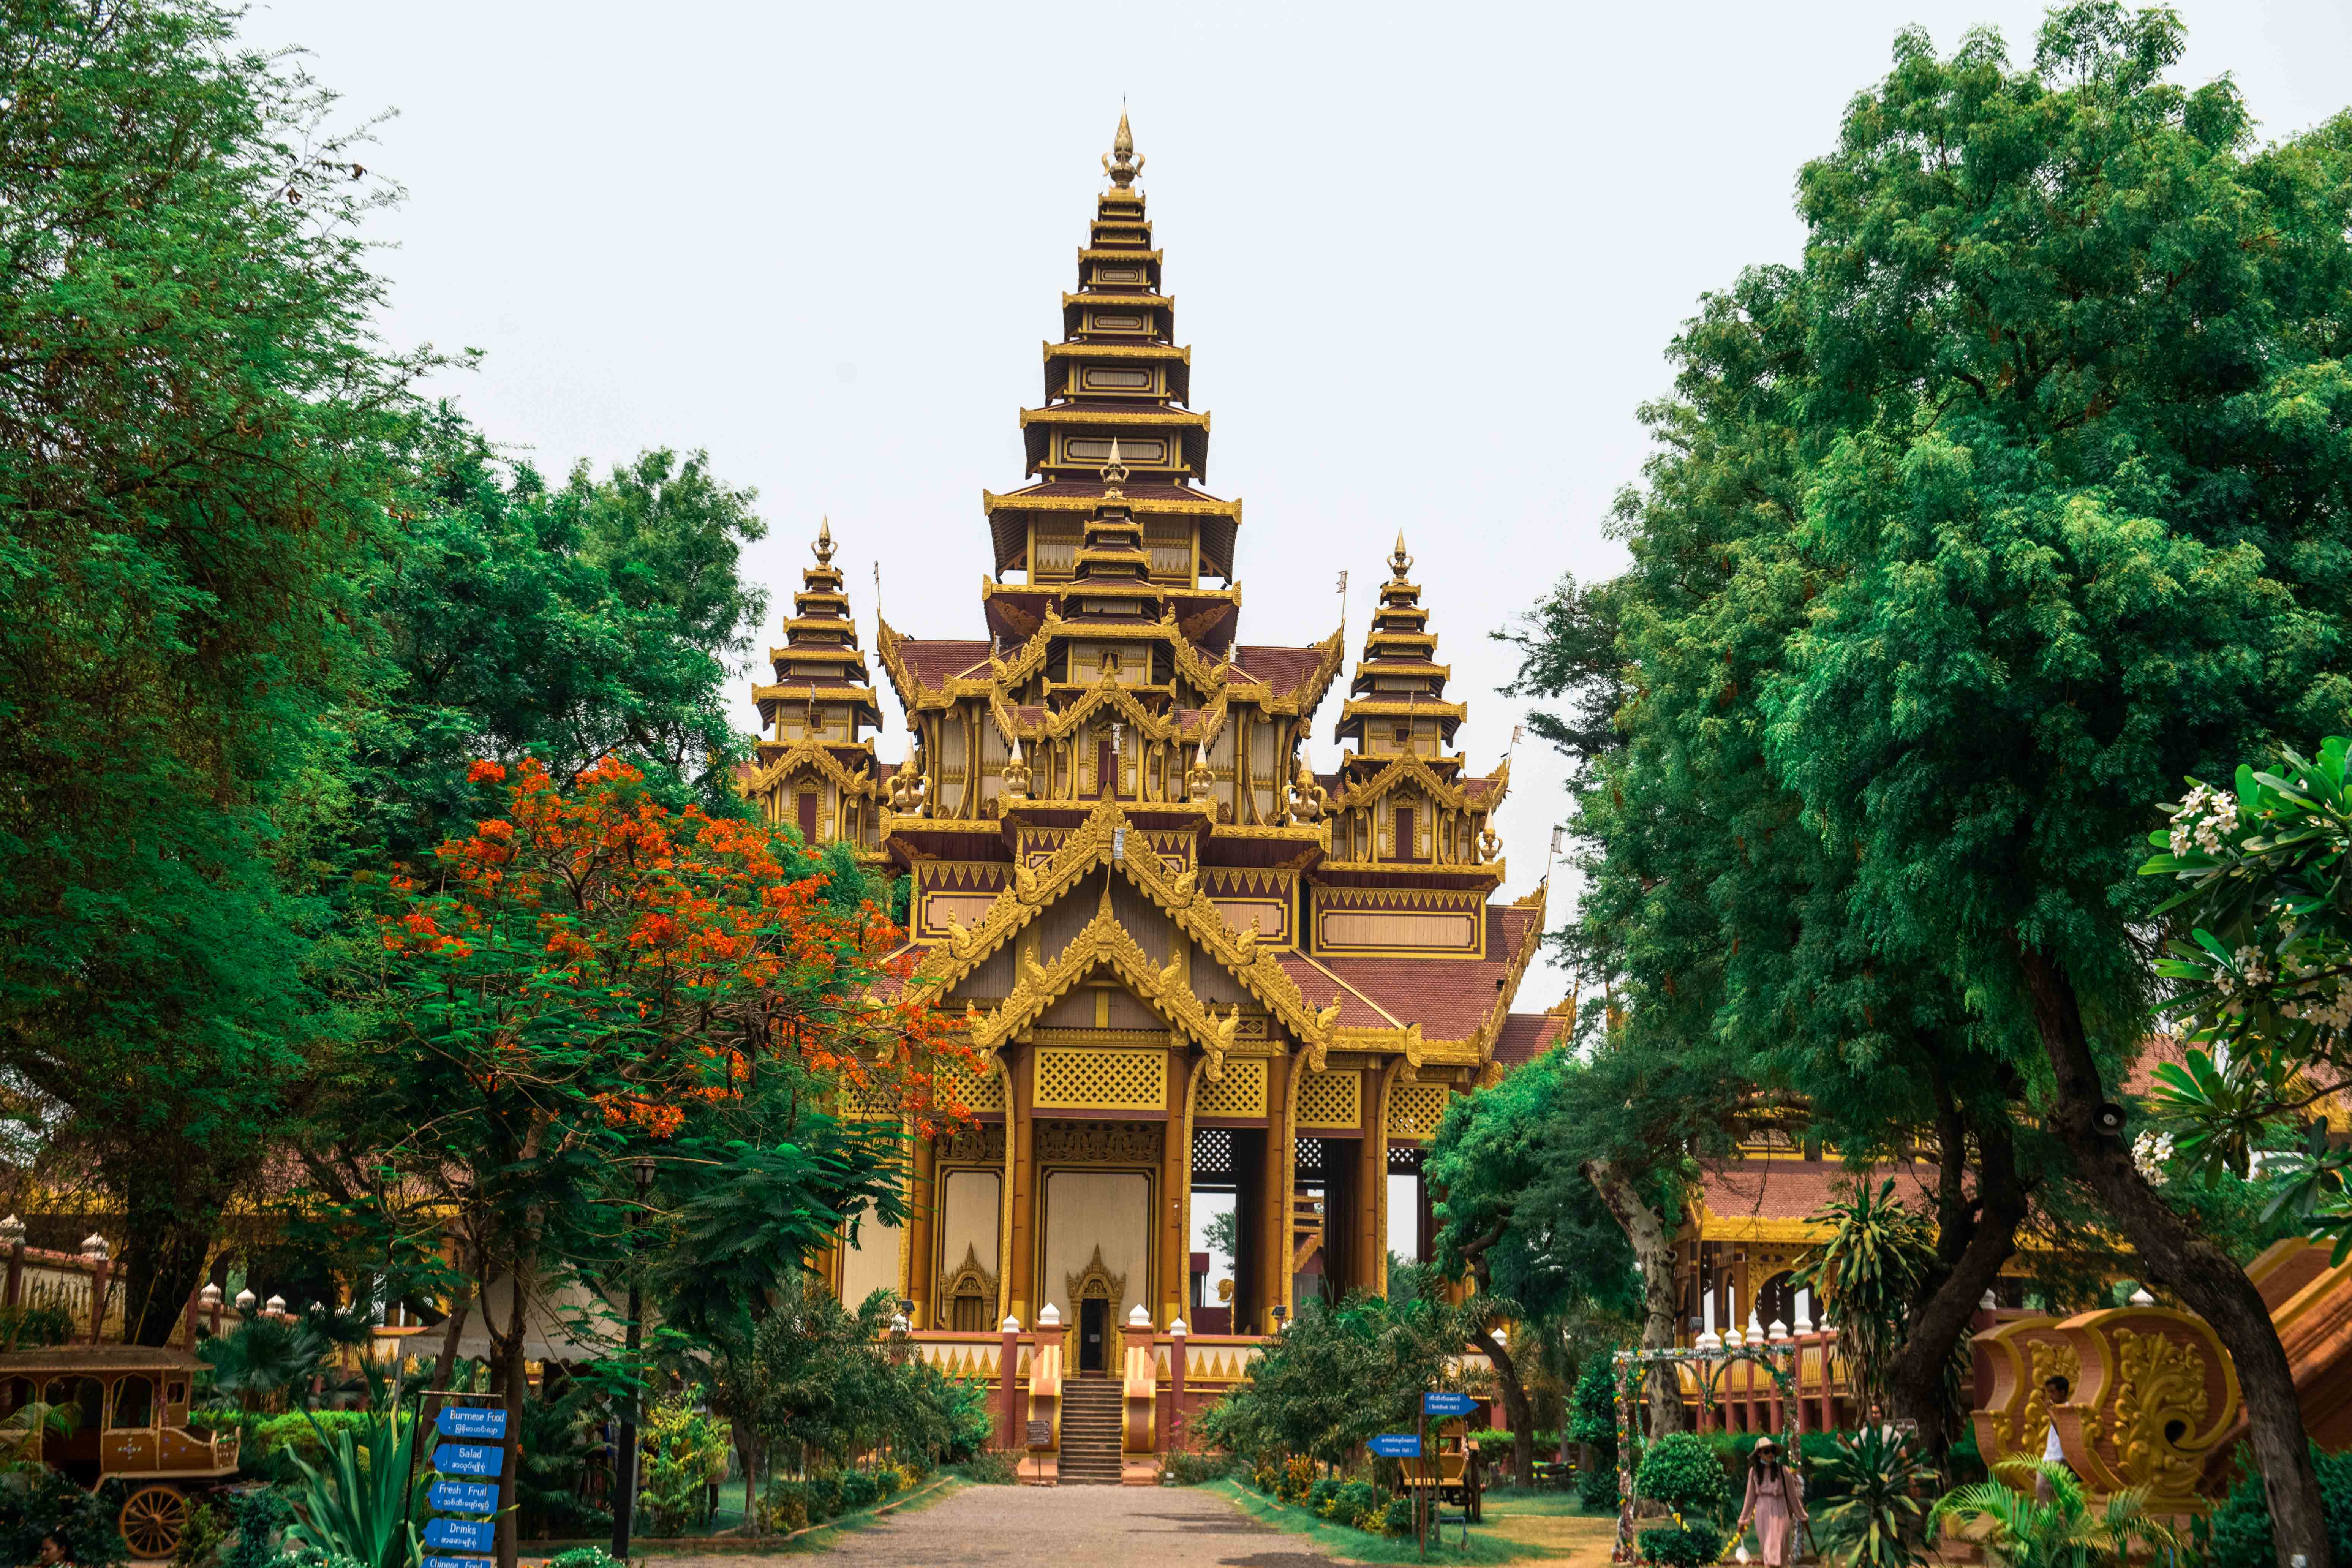 缅甸唯一收门票的景区,建筑超级奢华,来过的游客都表示很美!